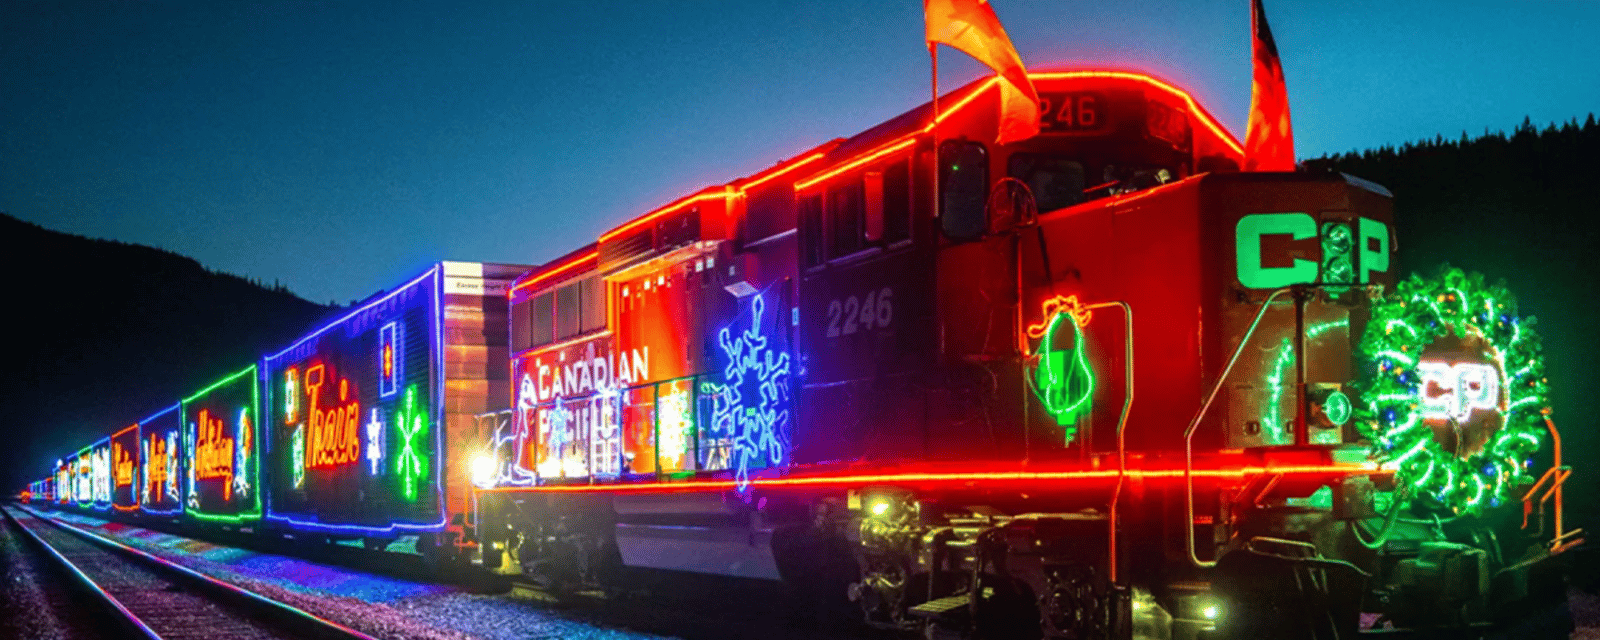 Le sublime Train de Noël fait son retour cette semaine au Québec et voici où il va s'arrêter